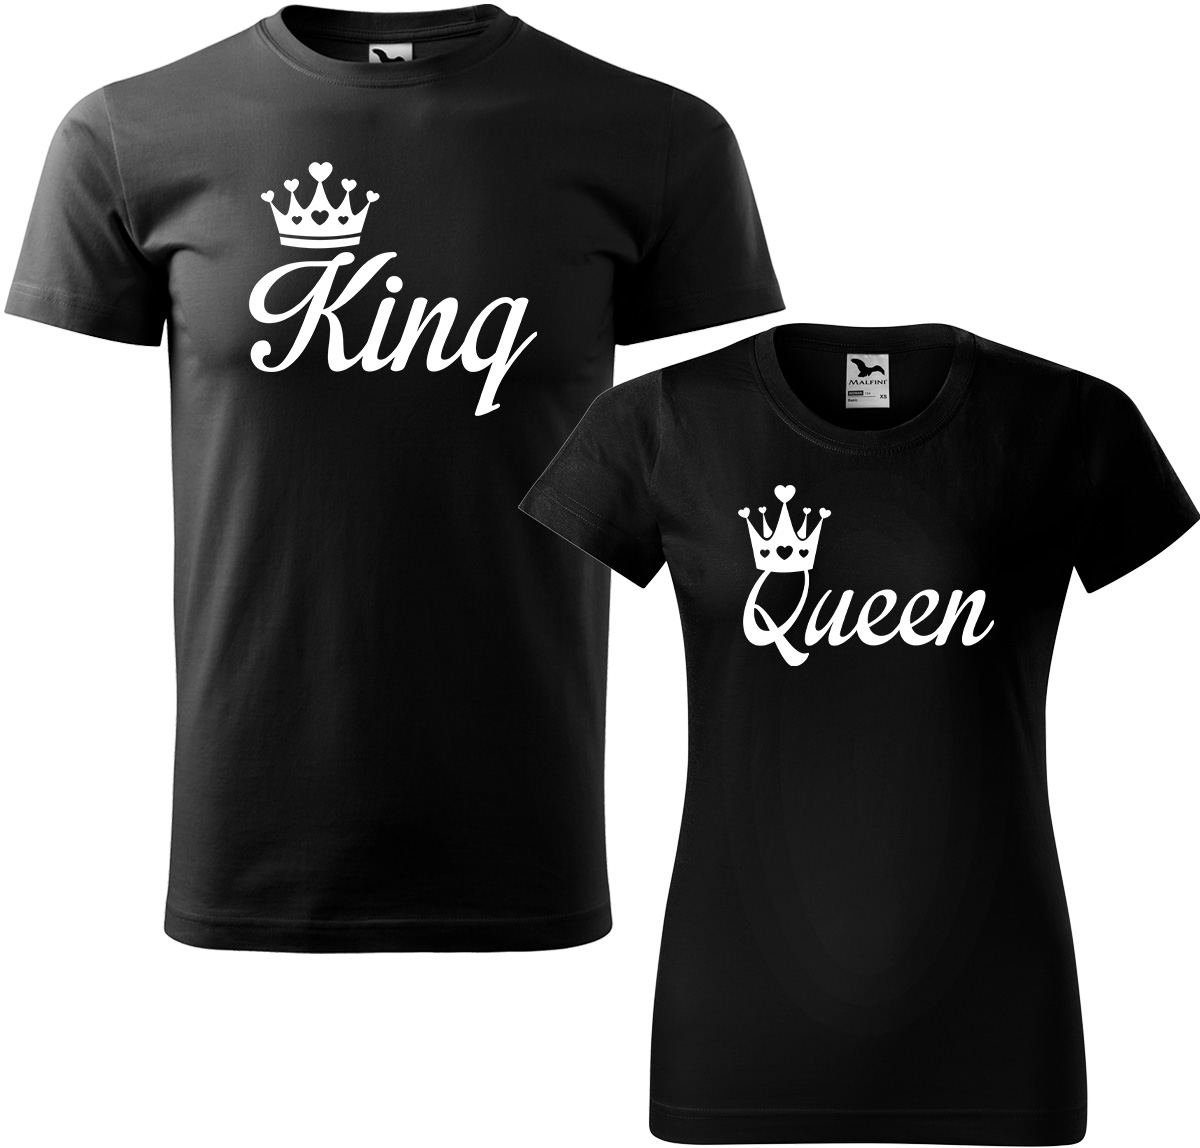 Trička pro páry - King a queen Barva: Černá (01), Velikost dámské tričko: 2XL, Velikost pánské tričko: S